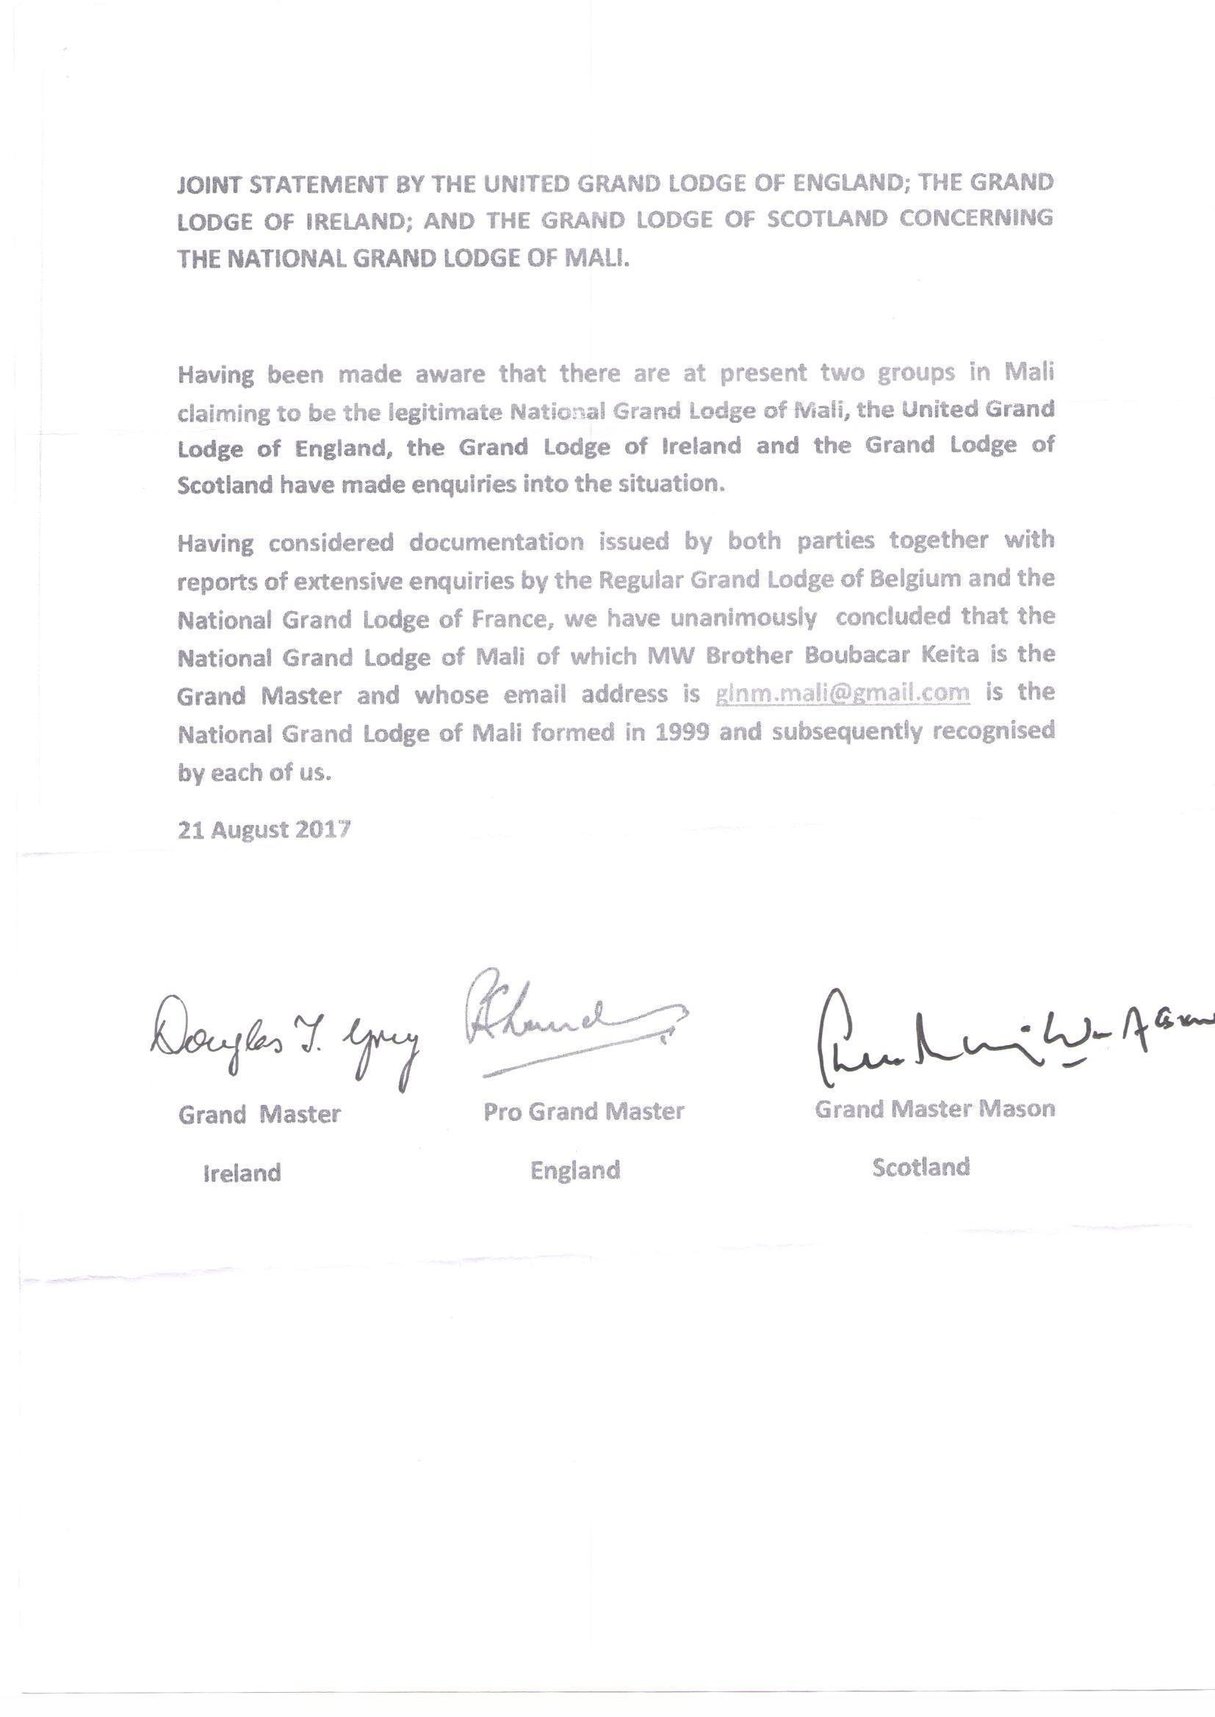 Communiqué de la grande loge d’Angleterre, d’Irlande et d’Ecosse reconnaissant Boubacar comme le Grand Maître de la GLNM, datant du 21 août 2017.